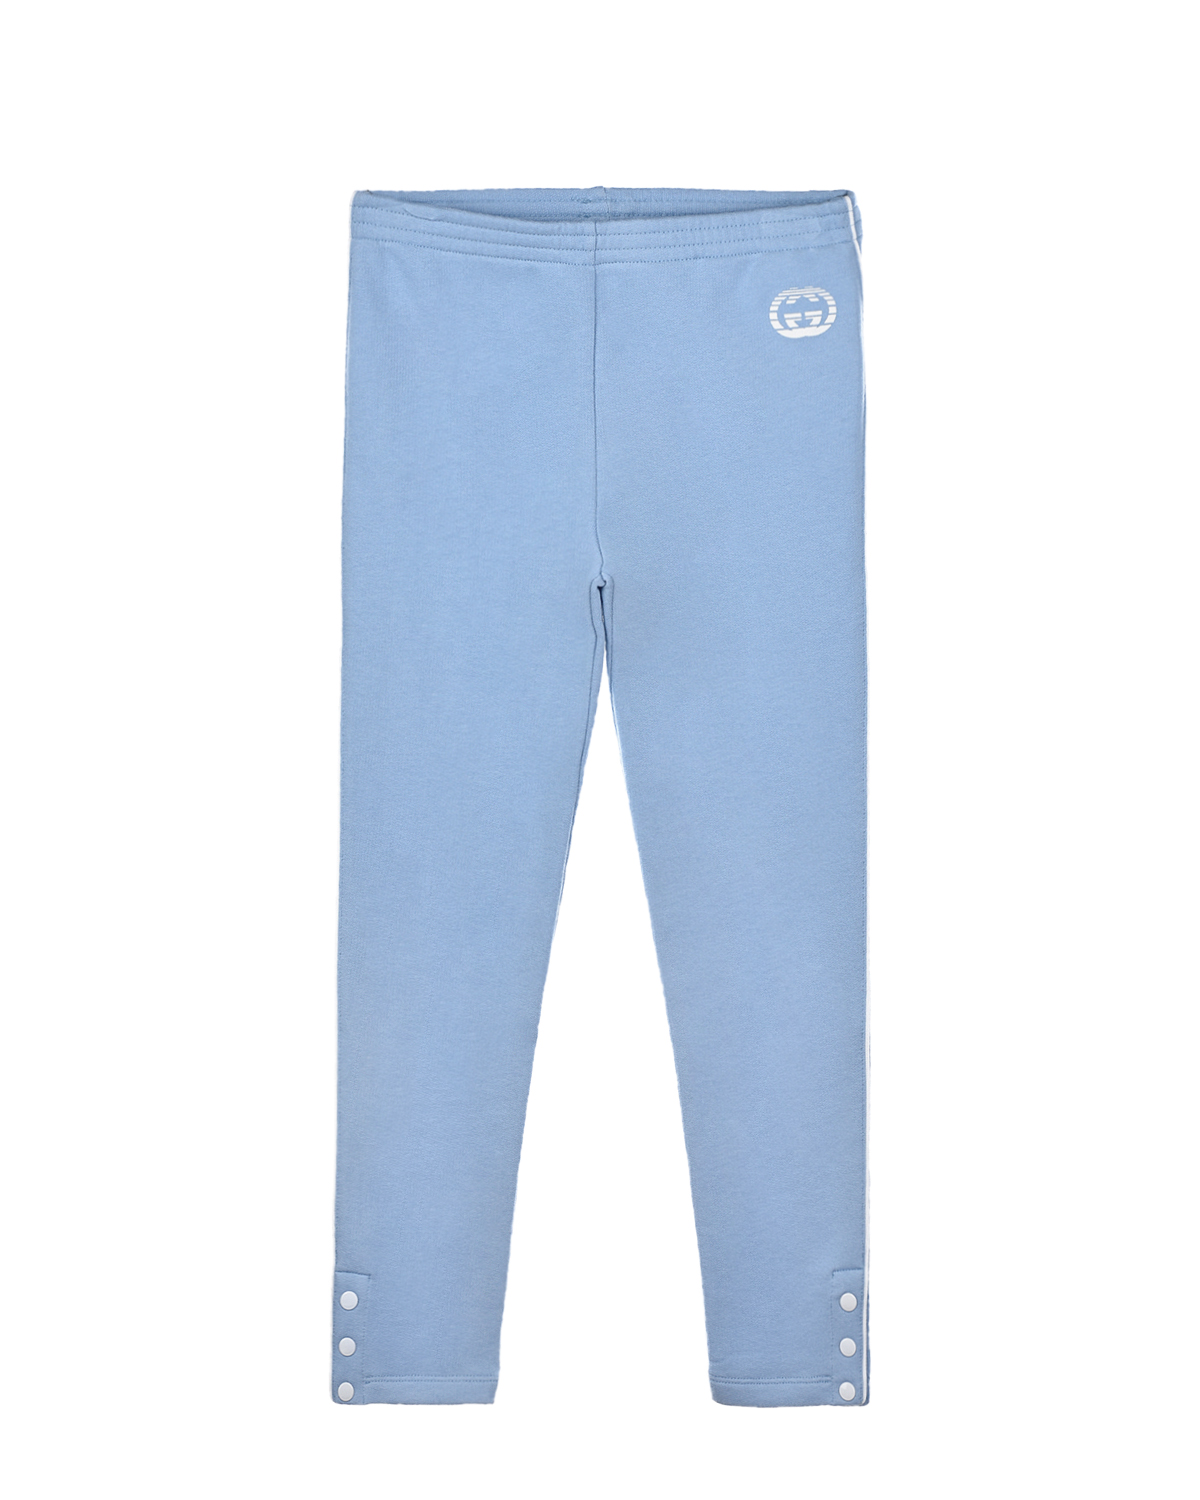 Купить Спортивные брюки с логотипом GG GUCCI, Голубой, 100%хлопок, 100%полиэстер